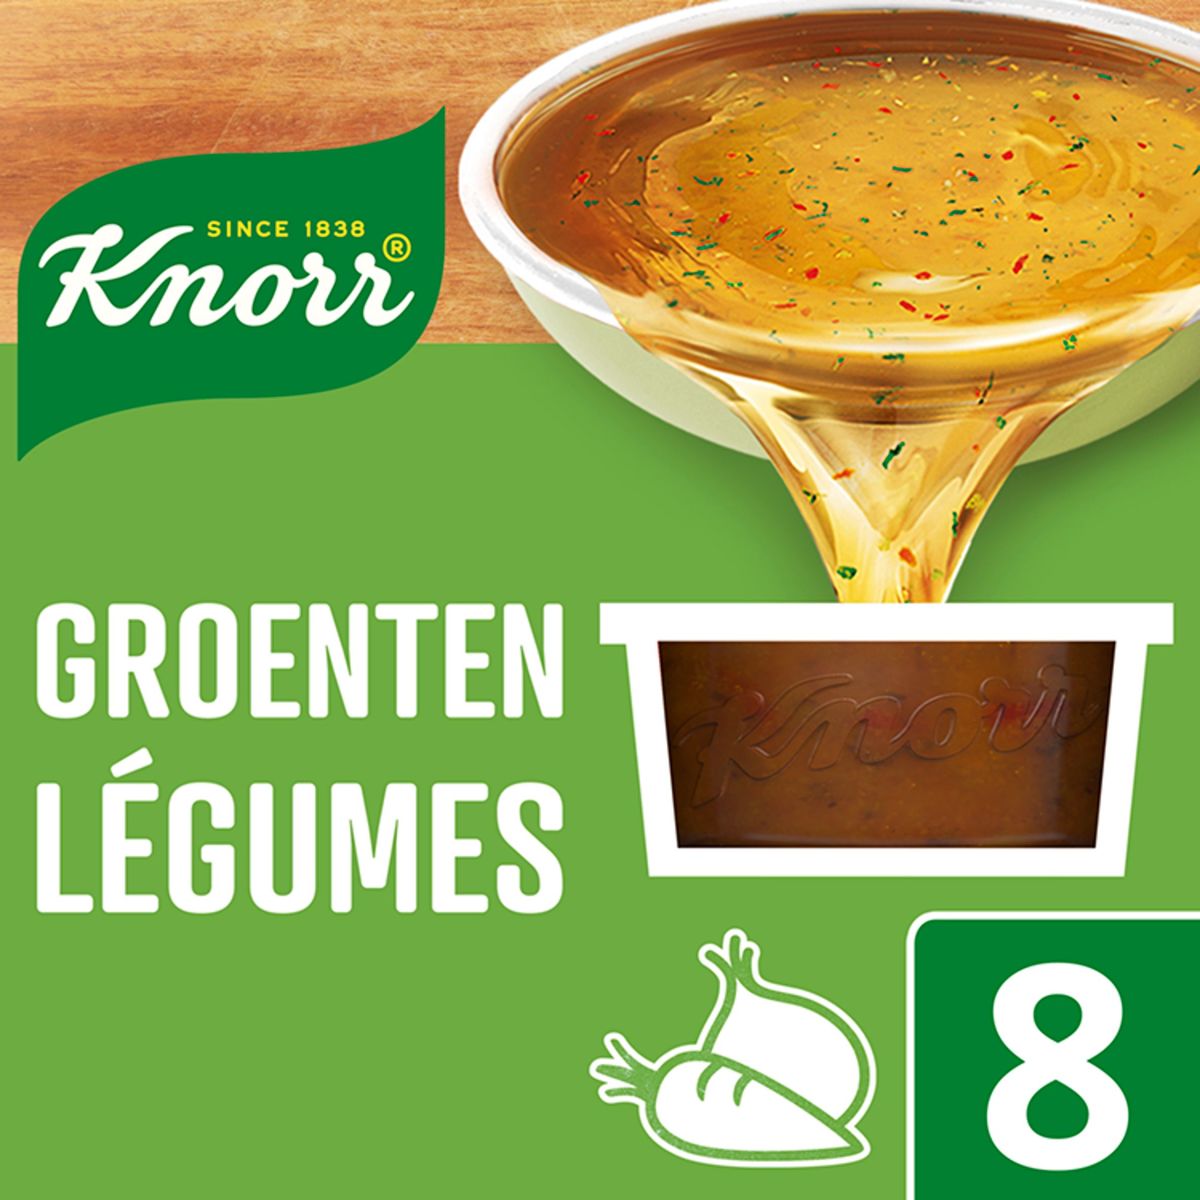 Knorr Marmites de bouillon Légumes 8 x 28 g